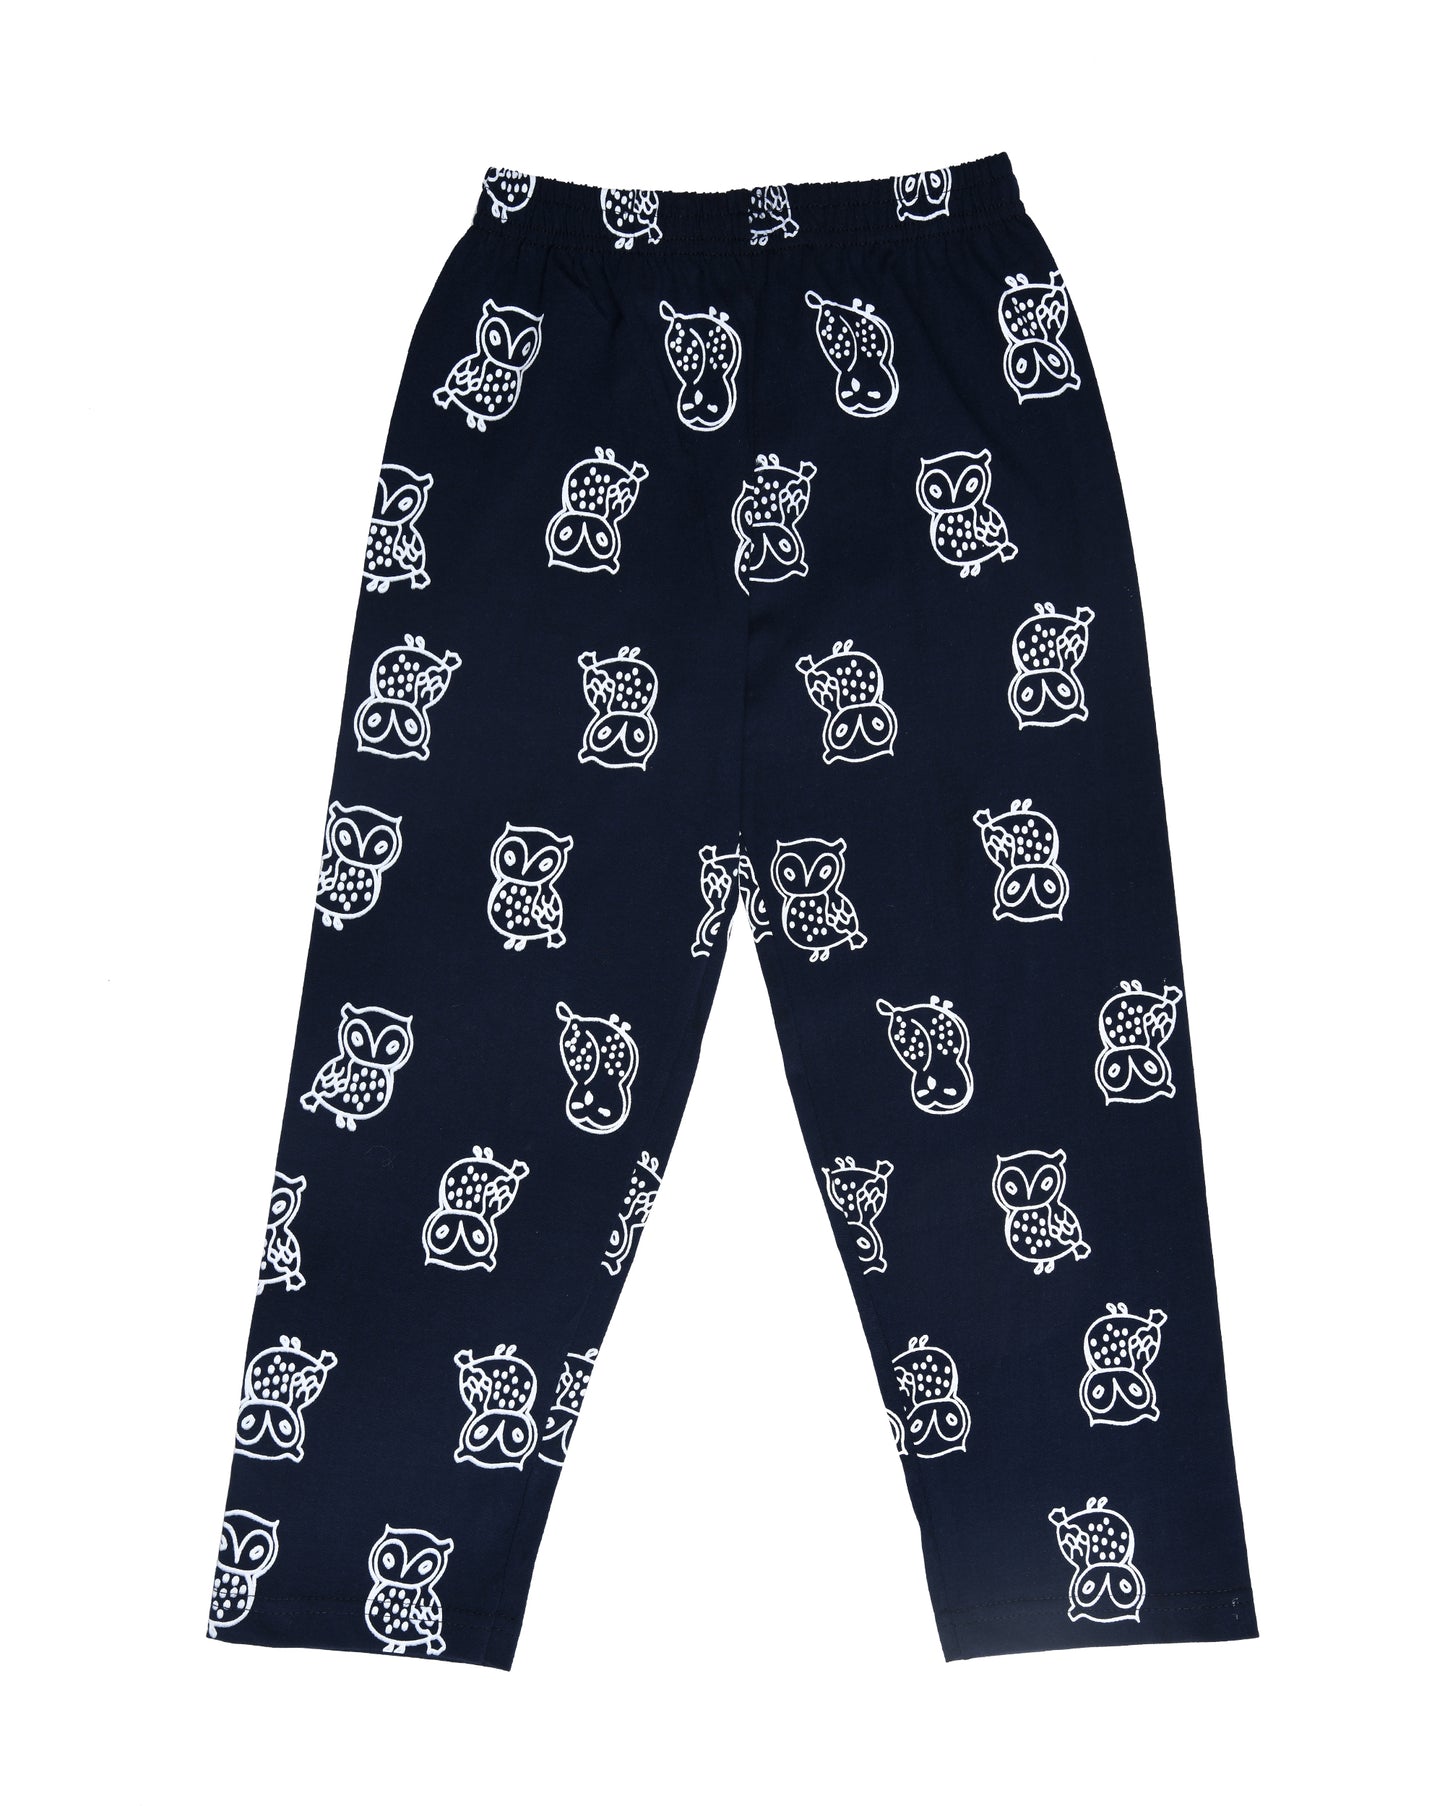 Black Owl Printed Kids Pyjamas